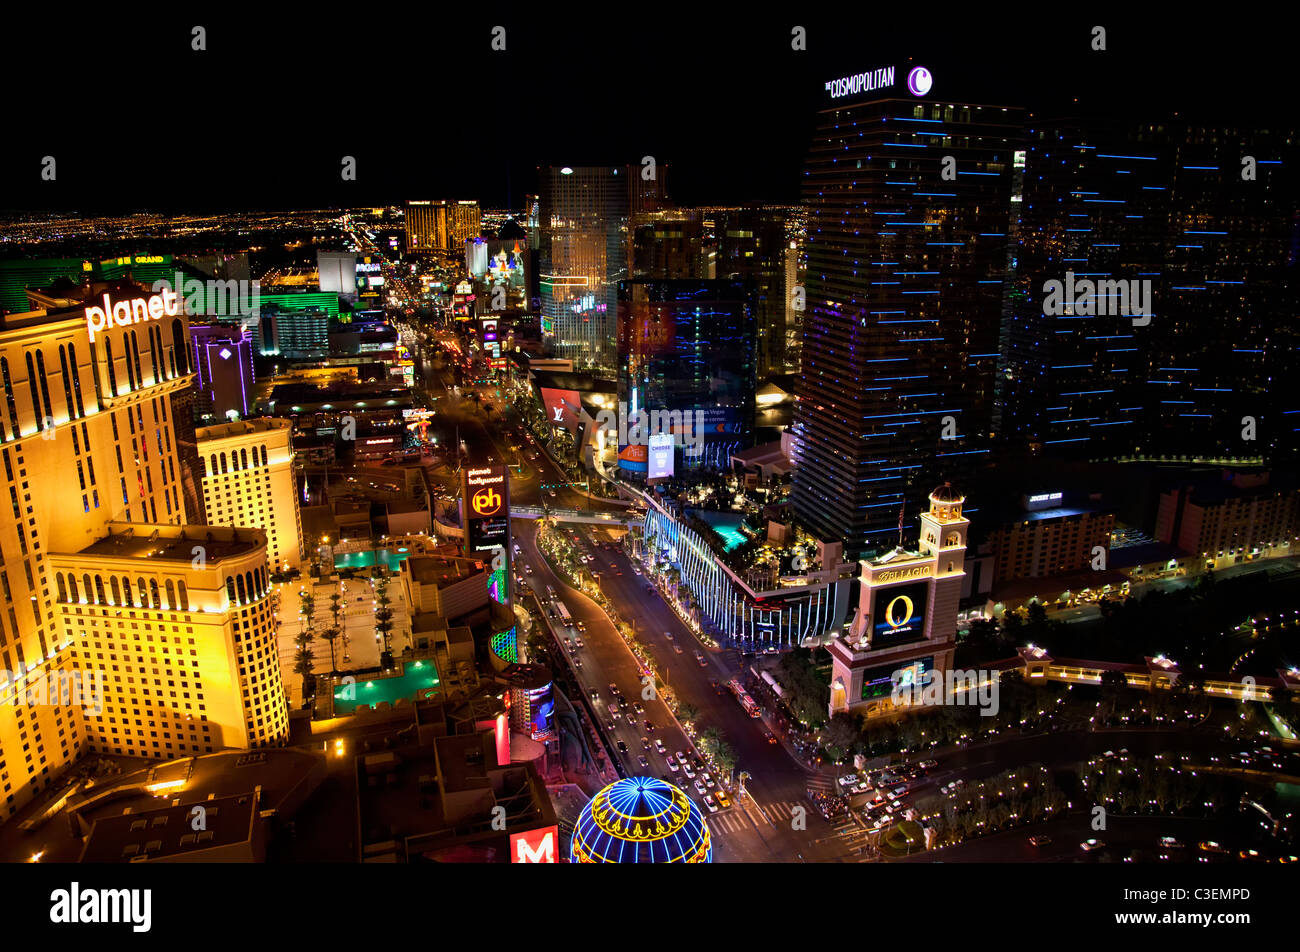 The Cosmopolitan along the Strip, Las Vegas, Nevada. Stock Photo